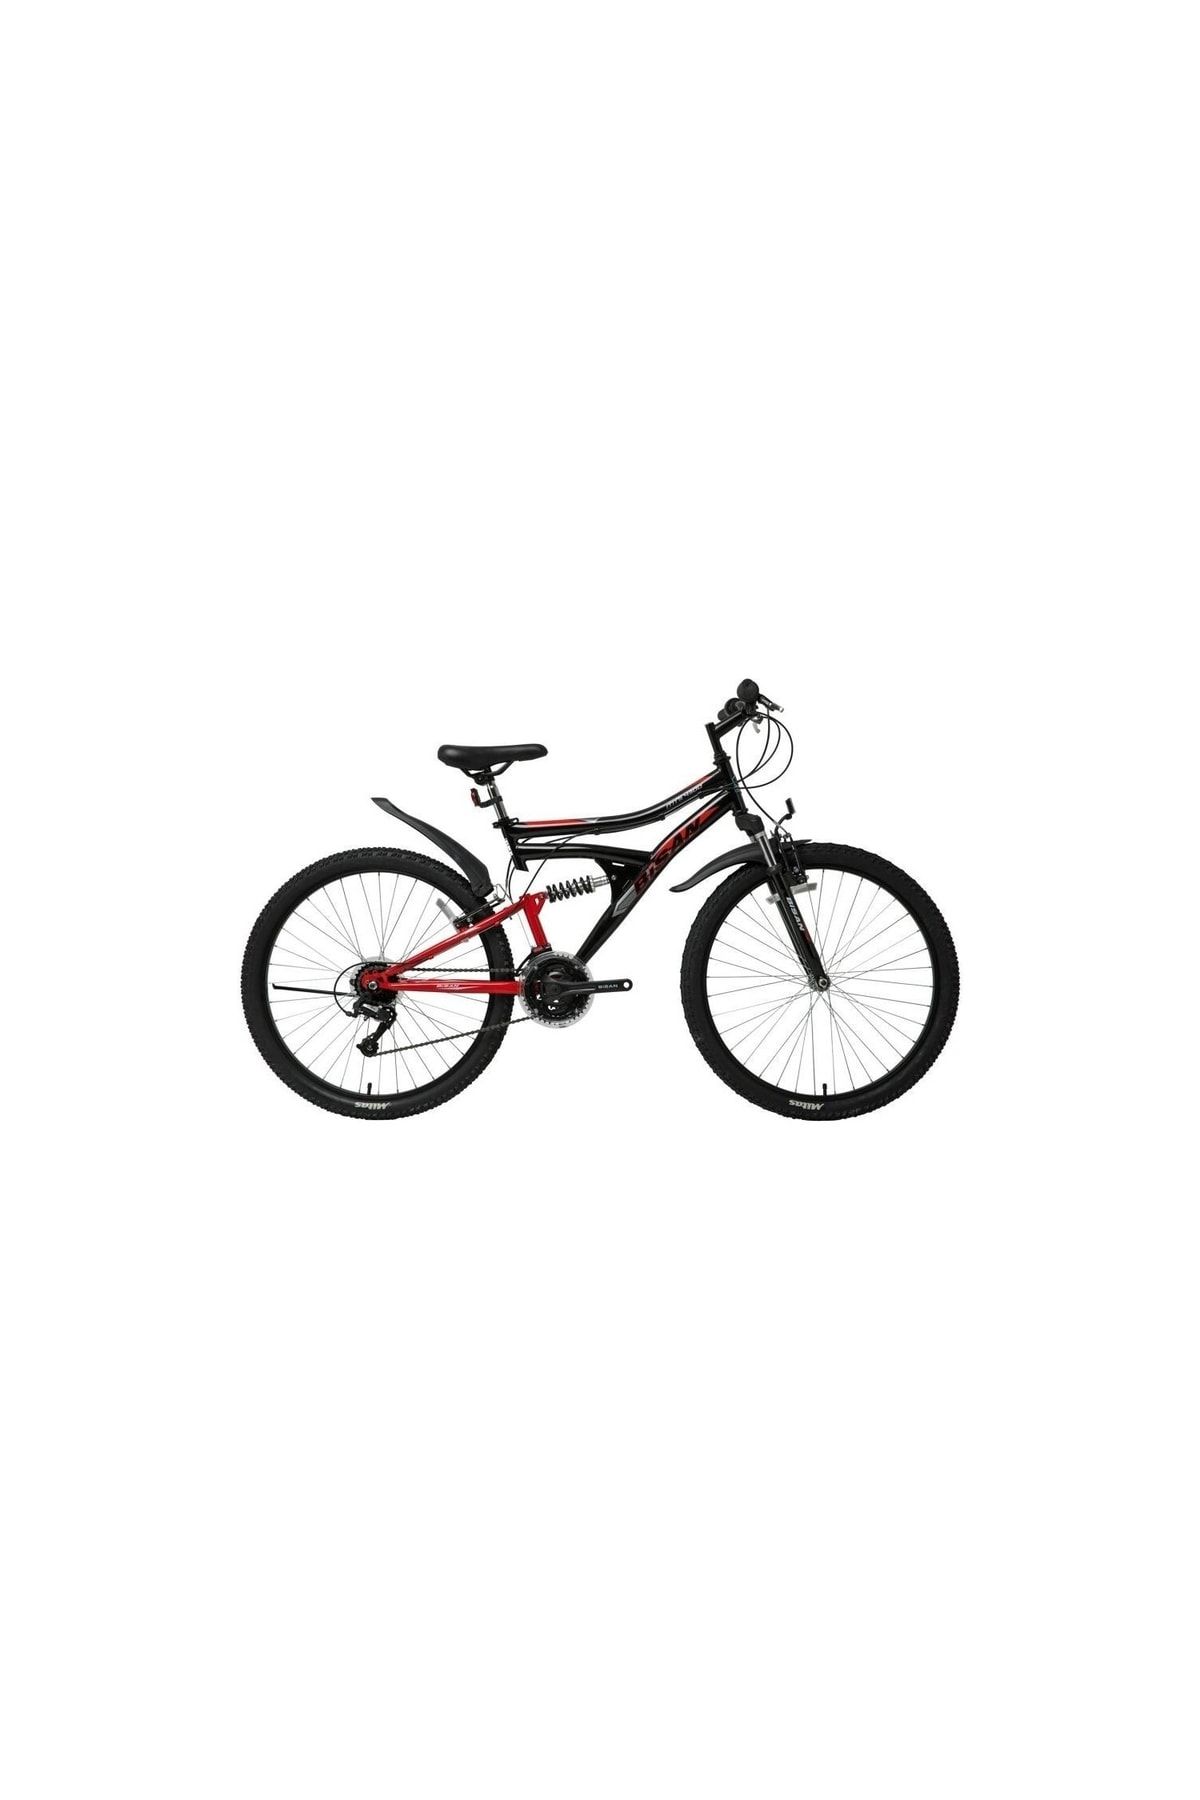 Bisan Mts 4300-22 24 Jant Bisiklet Mat Siyah Kırmızı